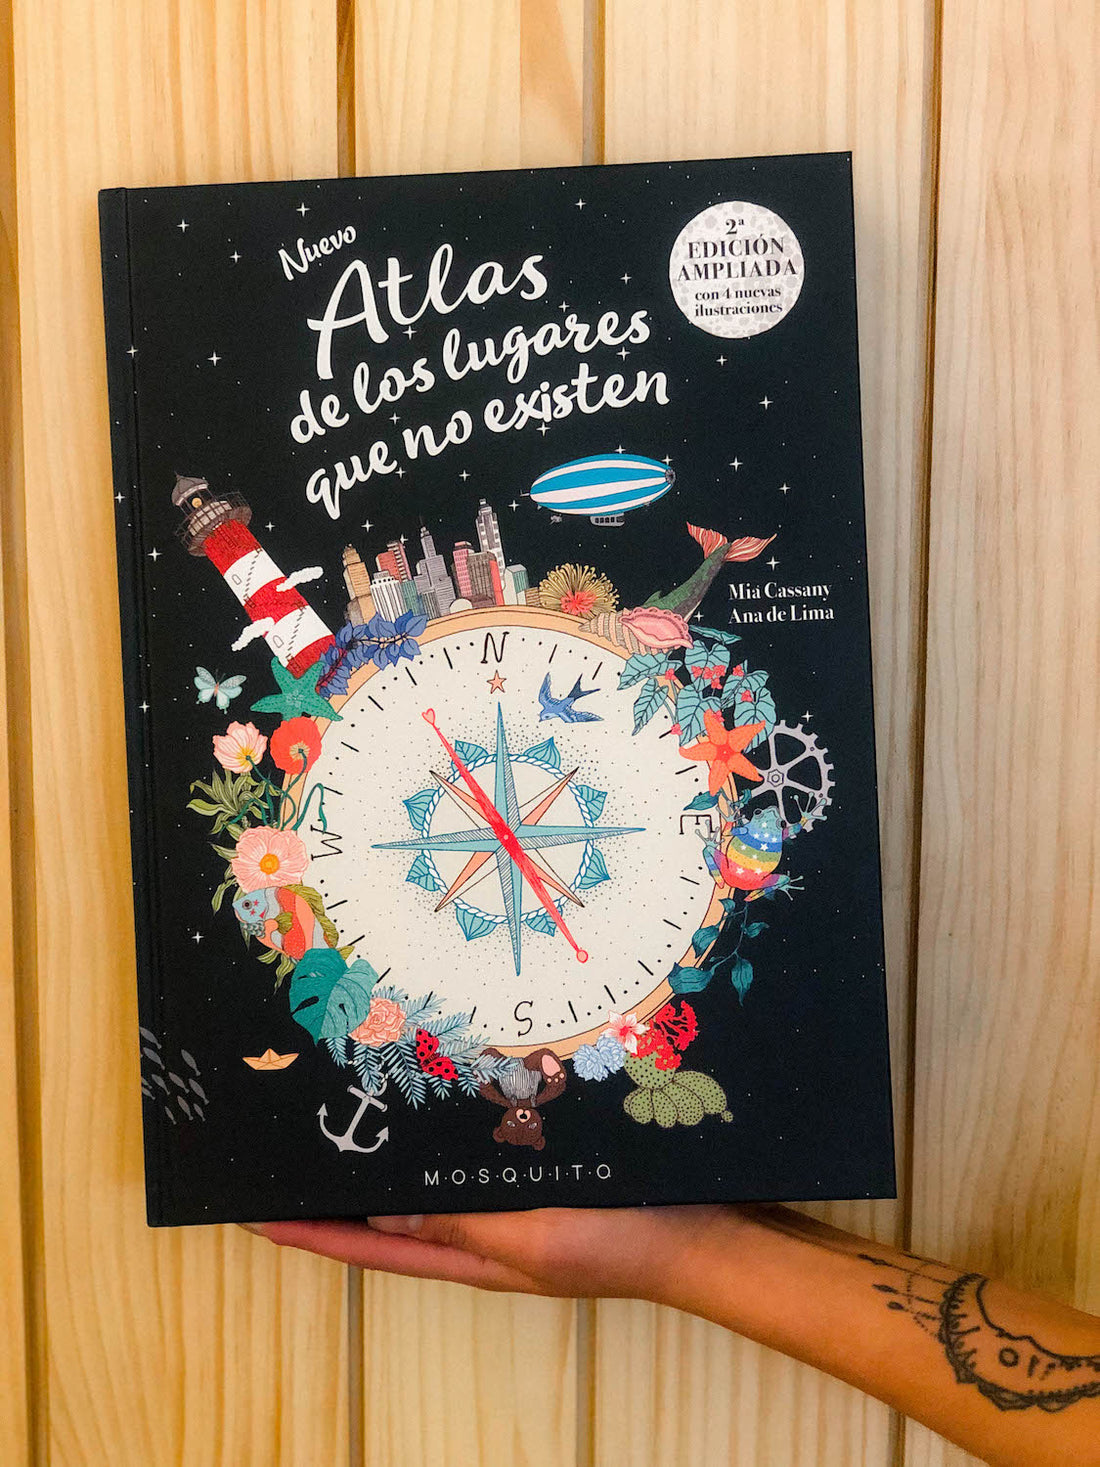 Nuevo Atlas De Los Lugares Que No Existen. Reseña por María José Carmona.